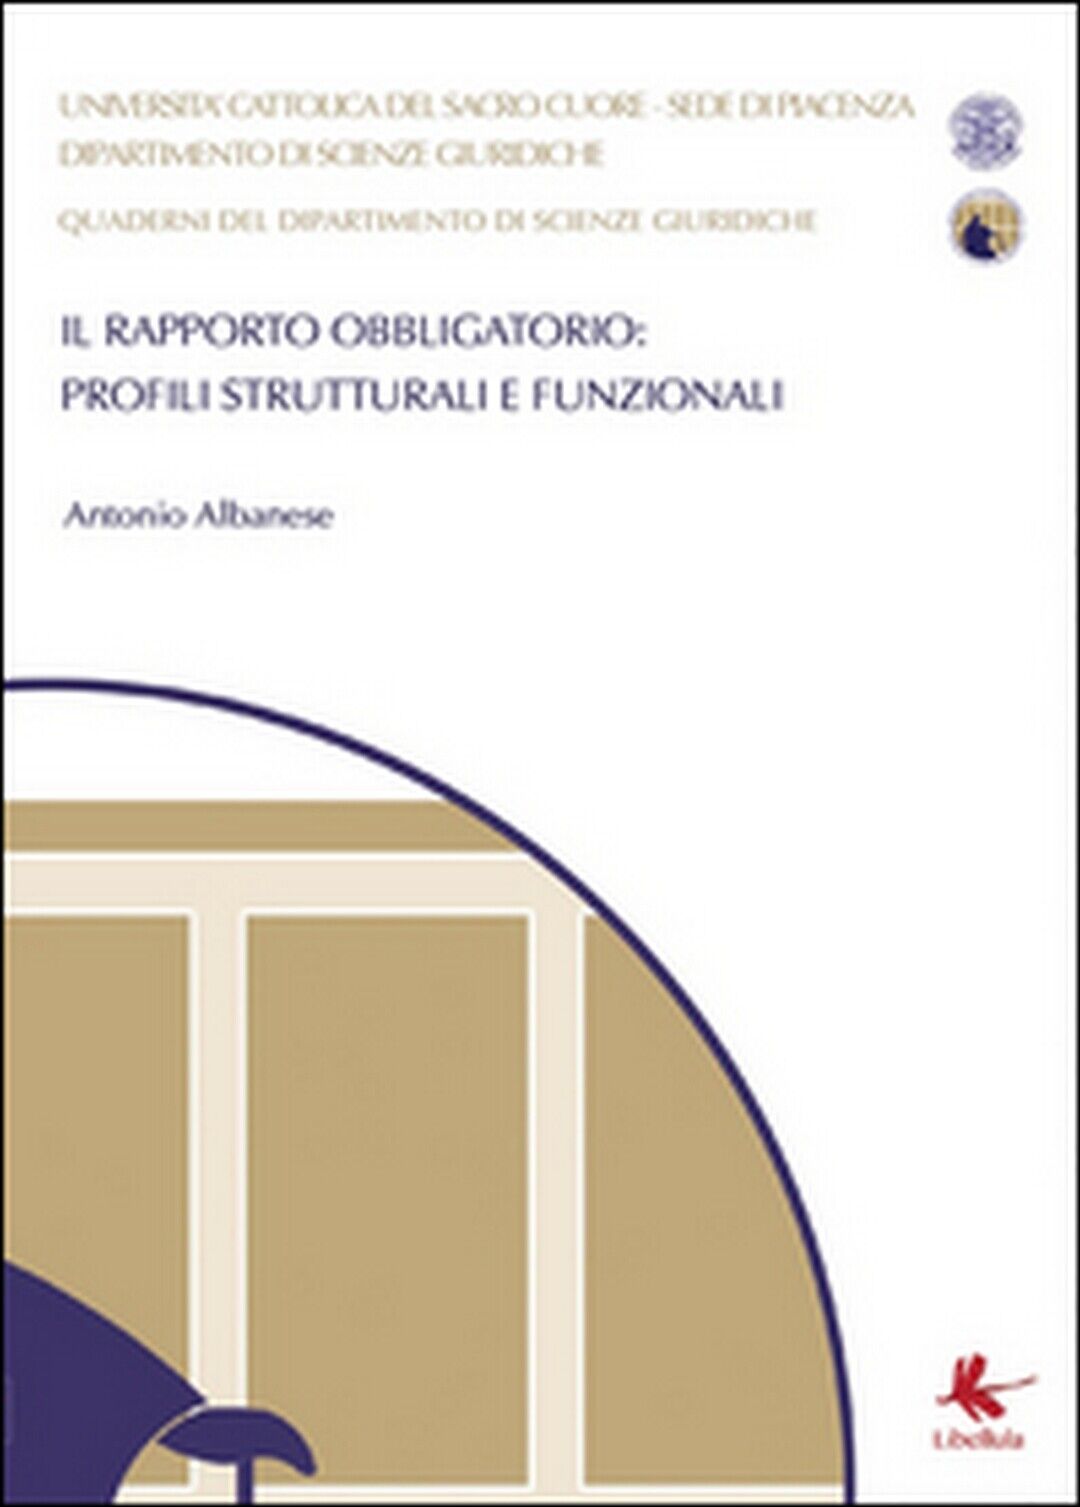 Il rapporto obbligatorio: profili strutturali e funzionali, di Antonio Albanese